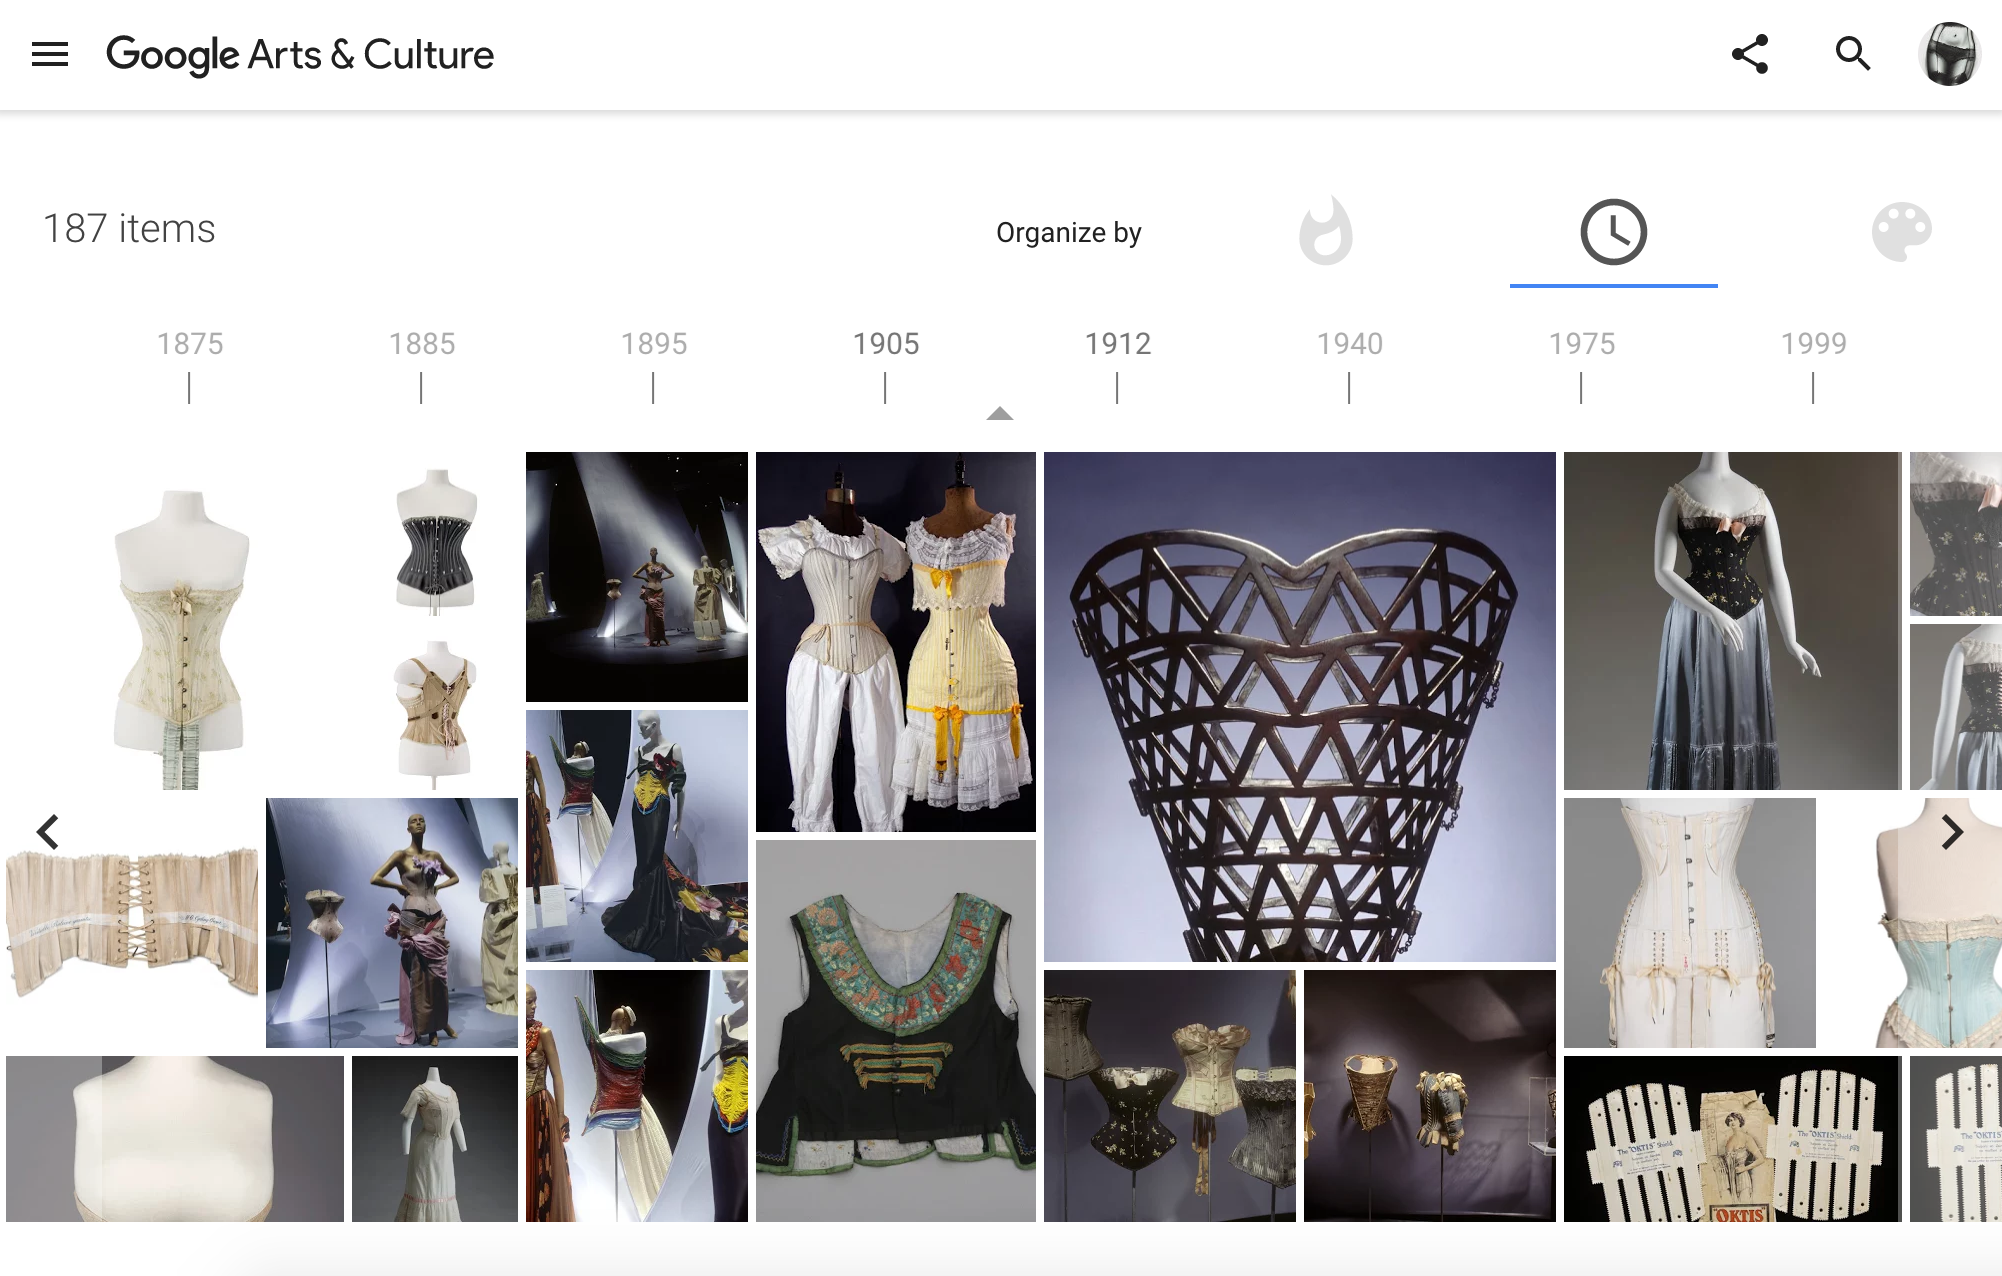 История нижнего белья и модных трендов в онлайн-музее Google Arts & Culture